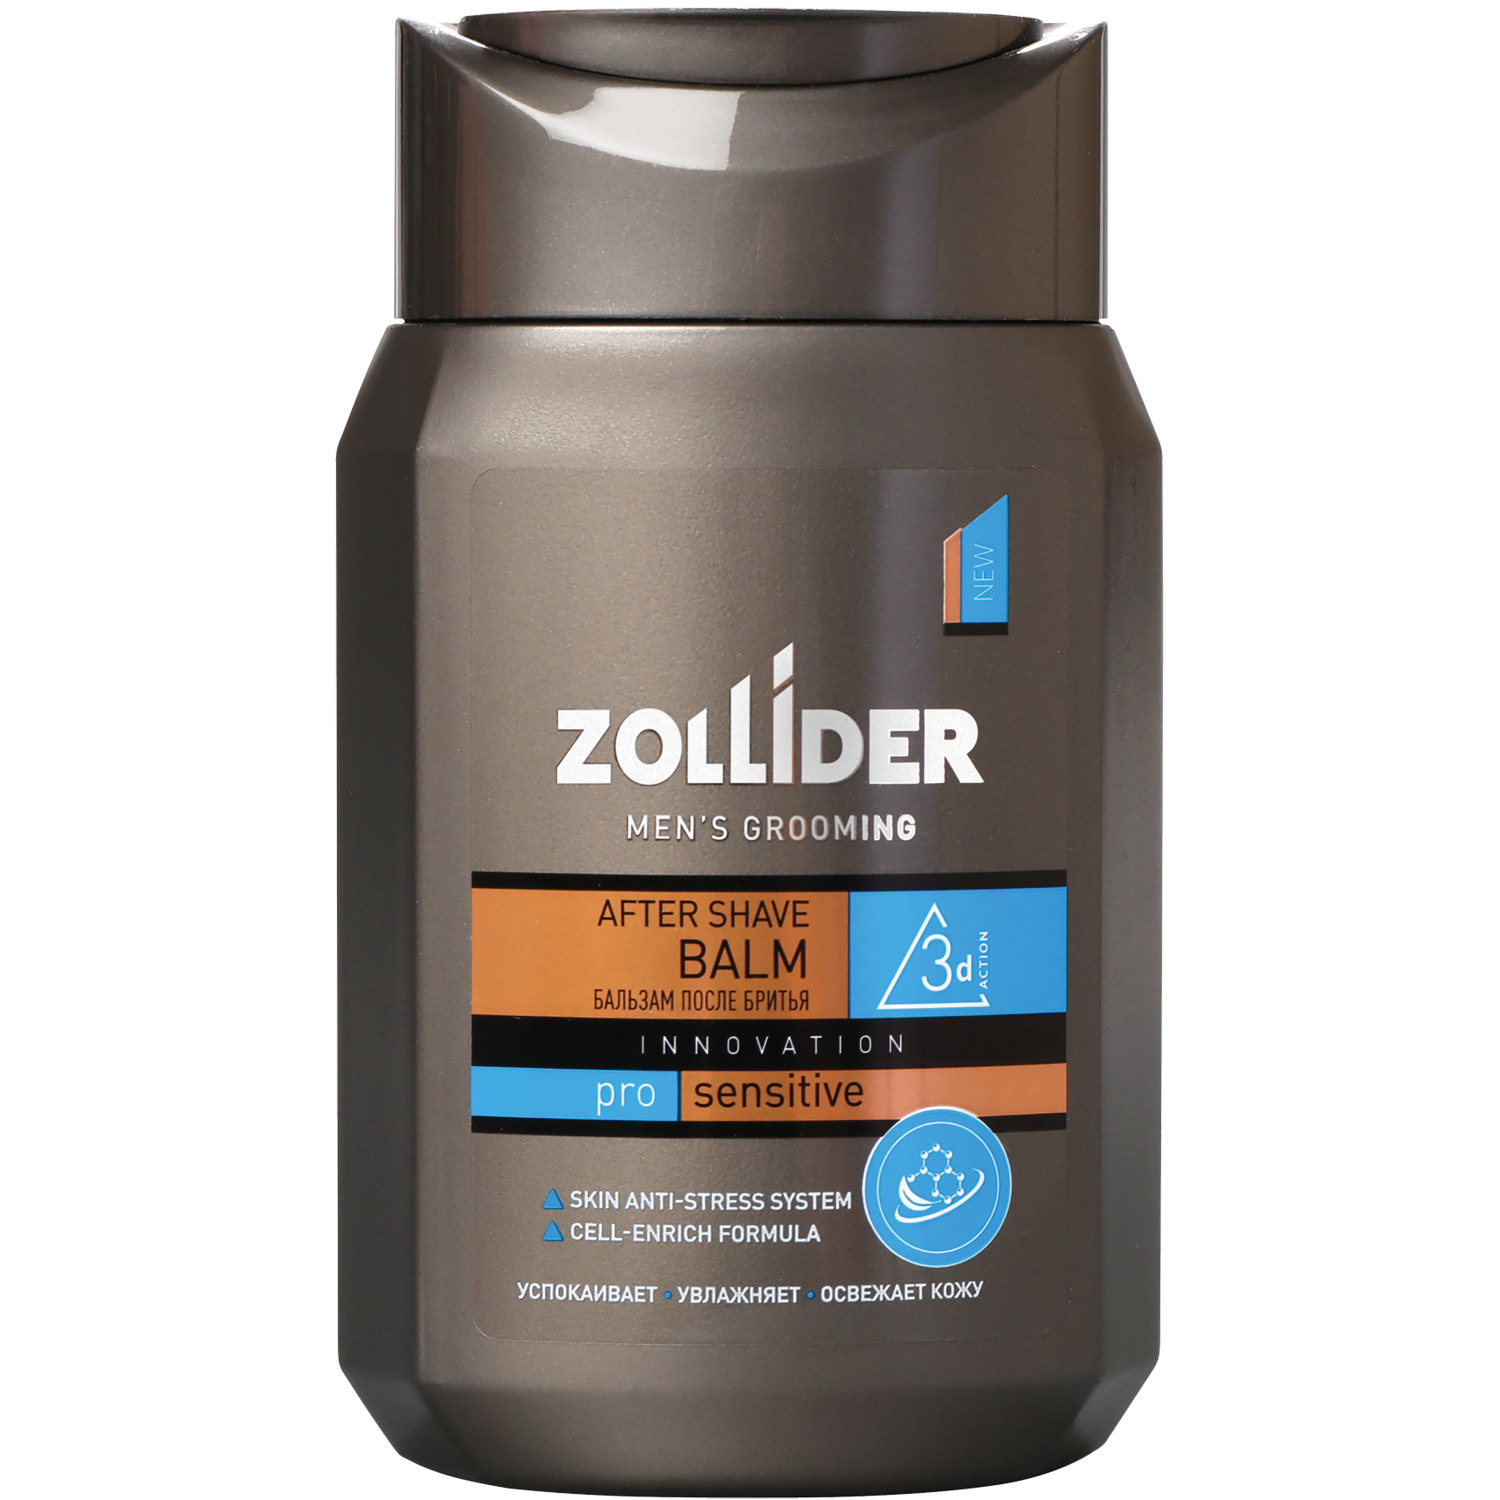 Бальзам после бритья Zollider Pro Sensitive для чувствительной кожи 150 мл цена и фото